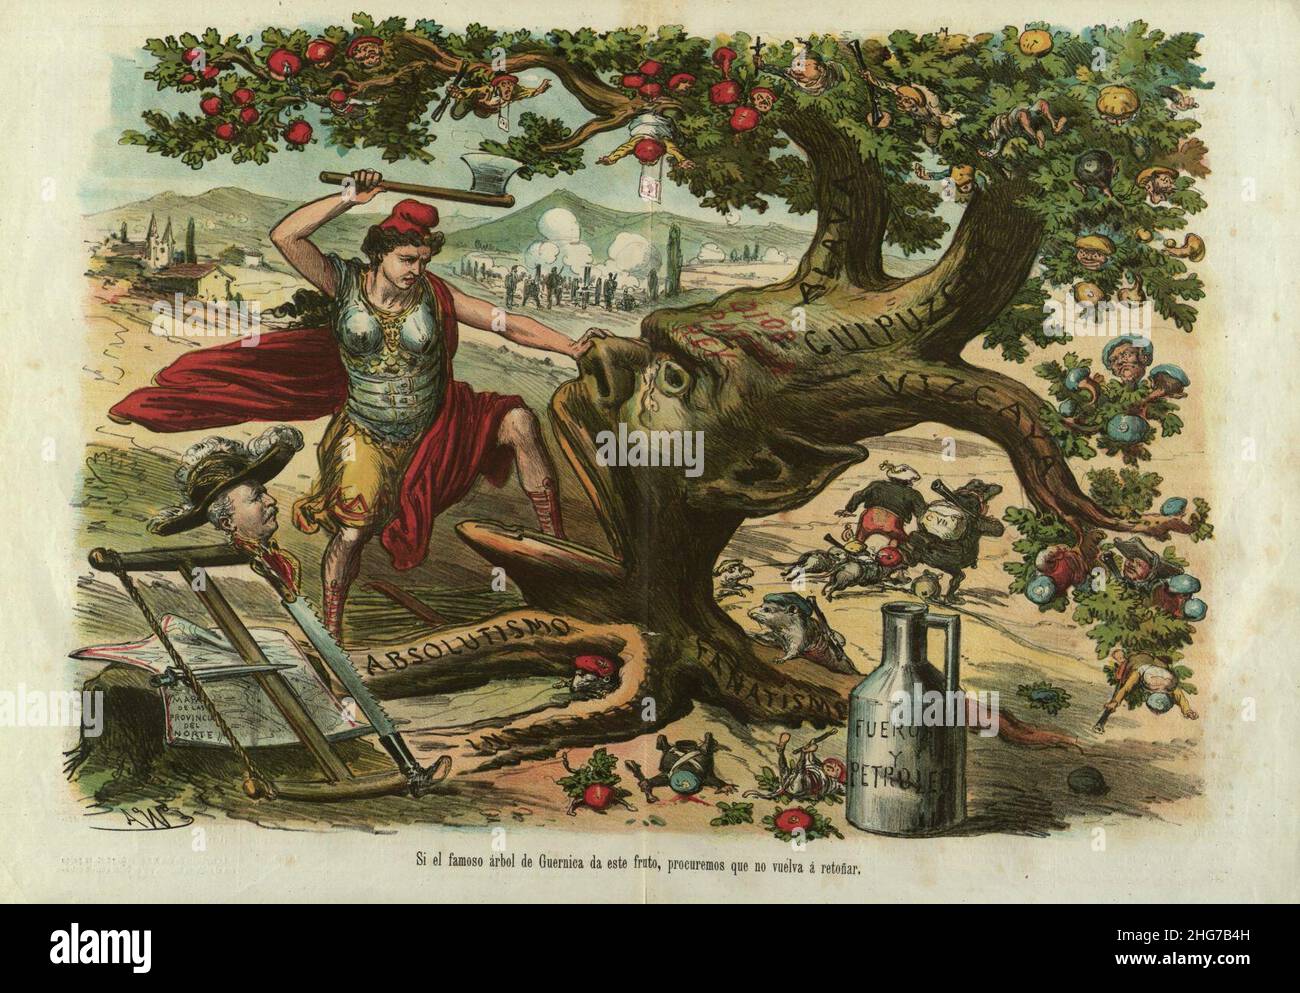 Si el famoso árbol de Guernica da este fruto, procuremos que no vuelva á retoñar, La Madeja Política, 2 de mayo de 1874. Stock Photo